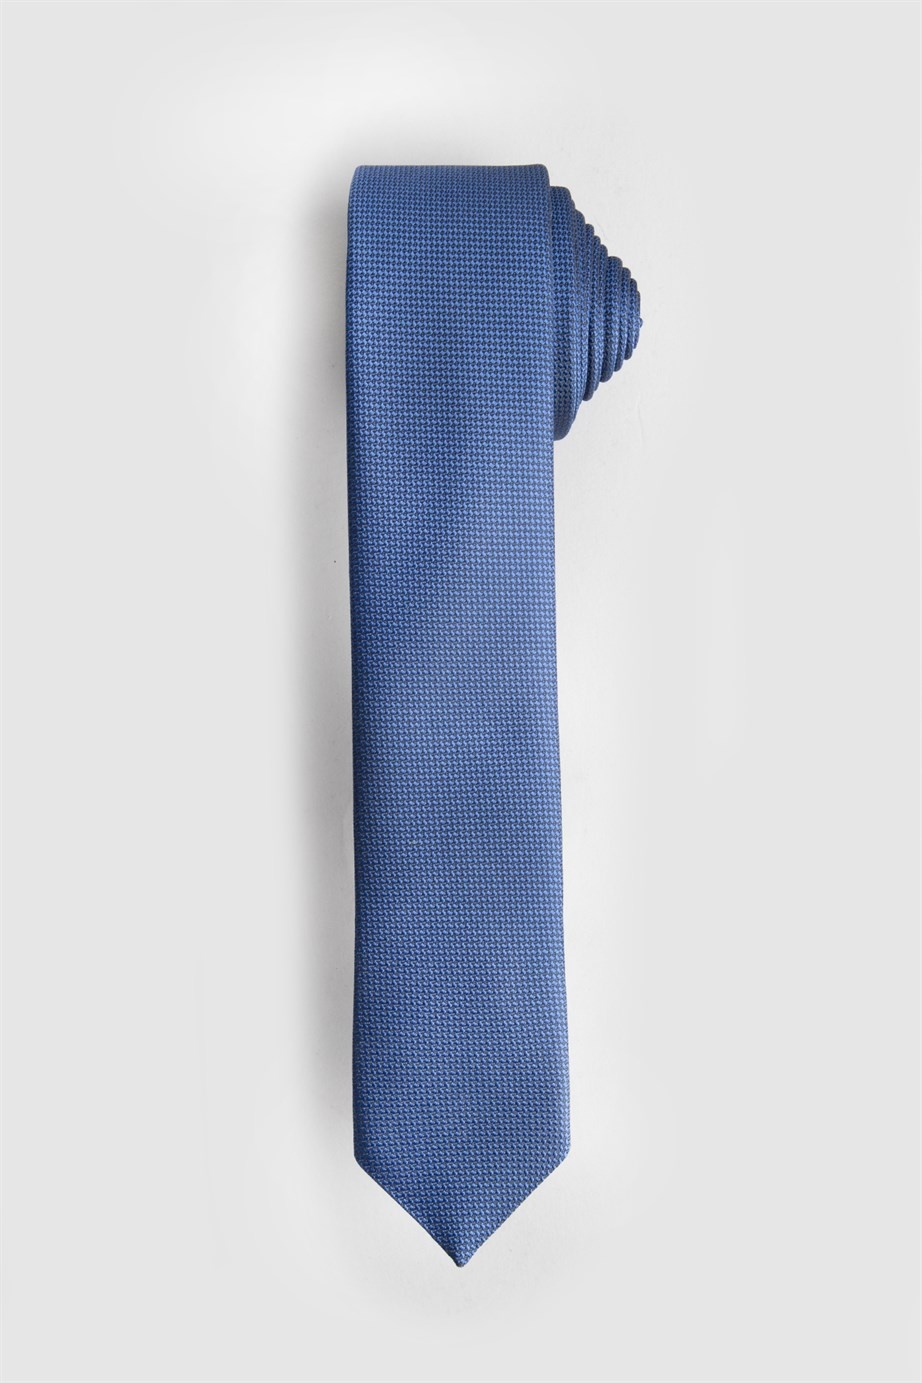 Indigókék színű vékony nyakkendő